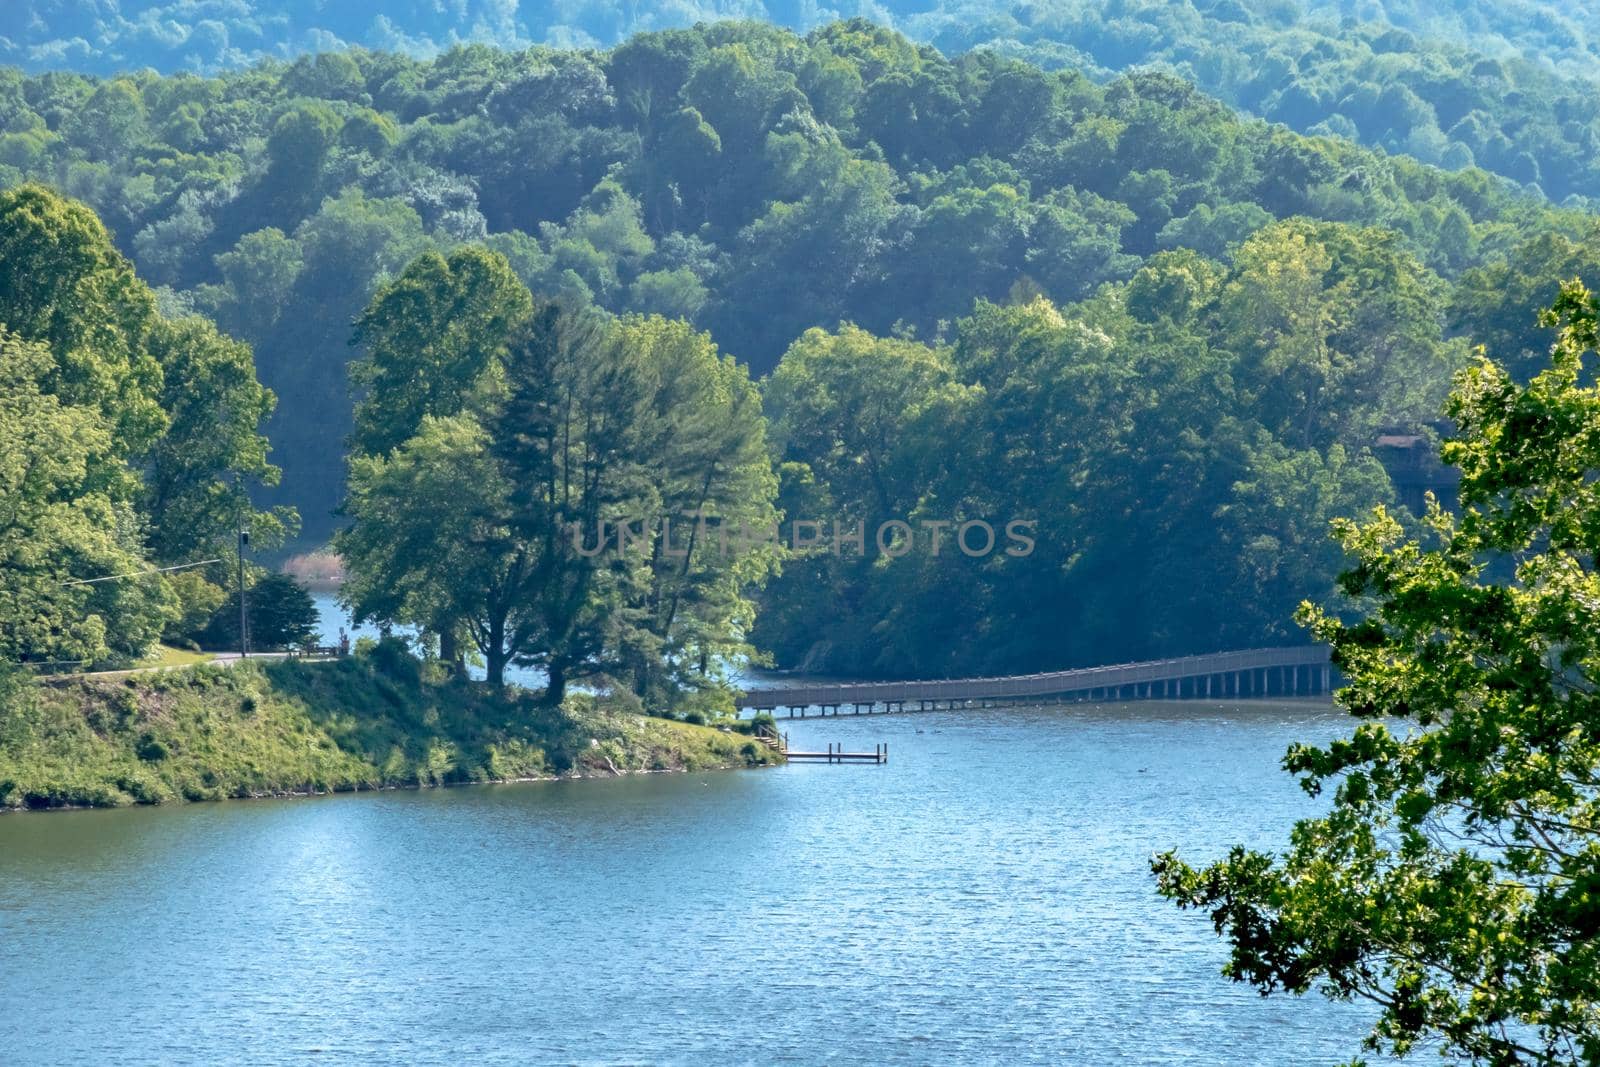 nature senes at lake junaluska north carolina by digidreamgrafix